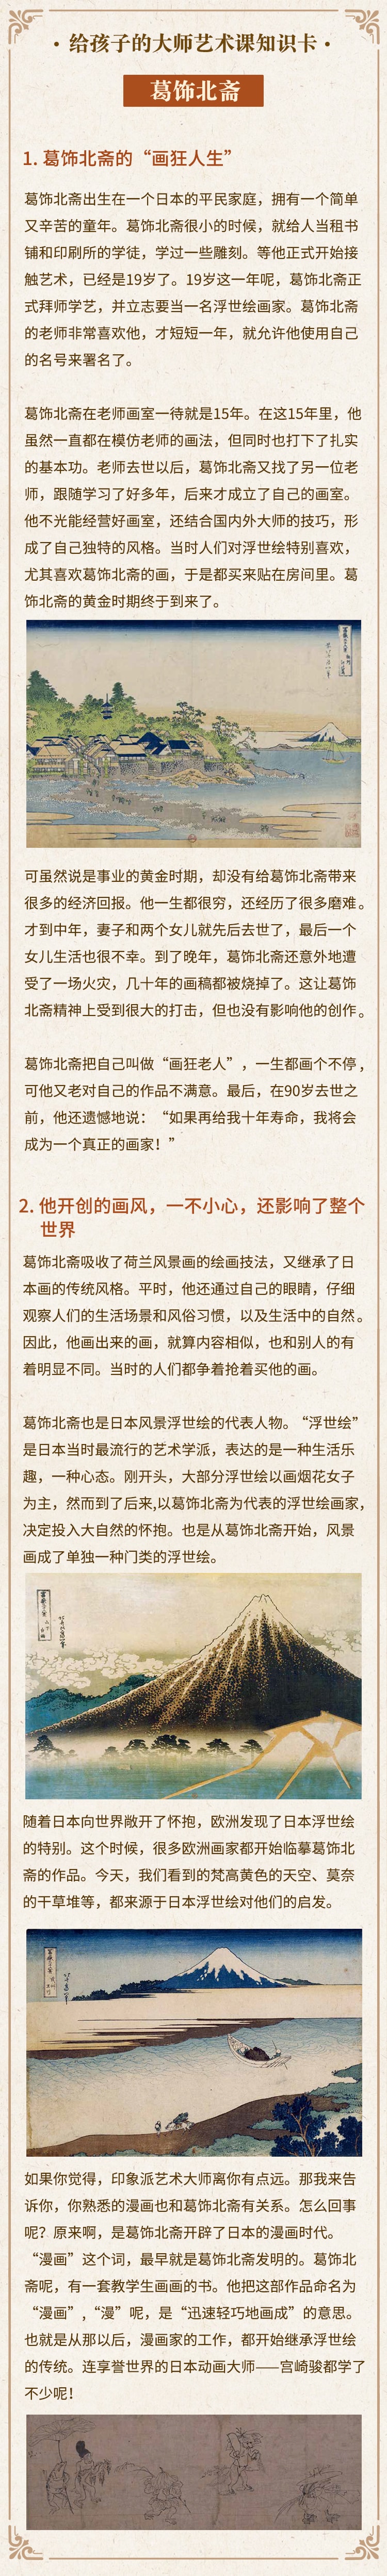 09.葛饰北斋：”画狂老人”竟然说自己没资格当画家-min.jpg